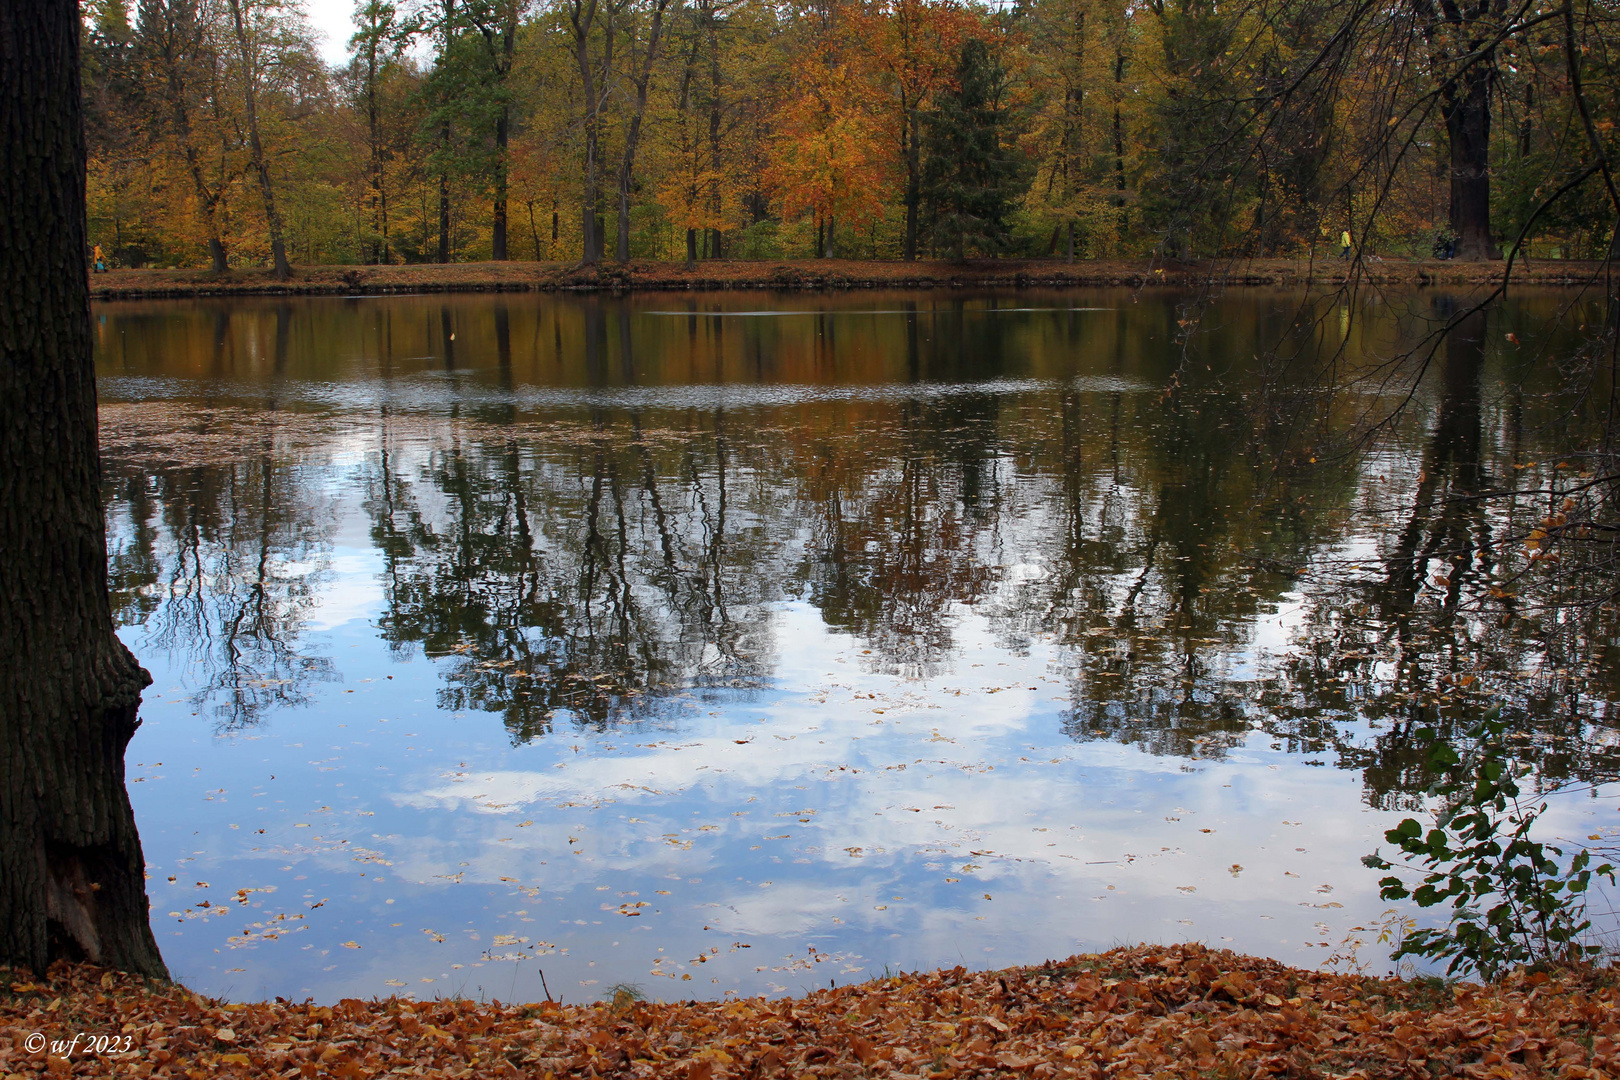 Teich in Herbstfarben